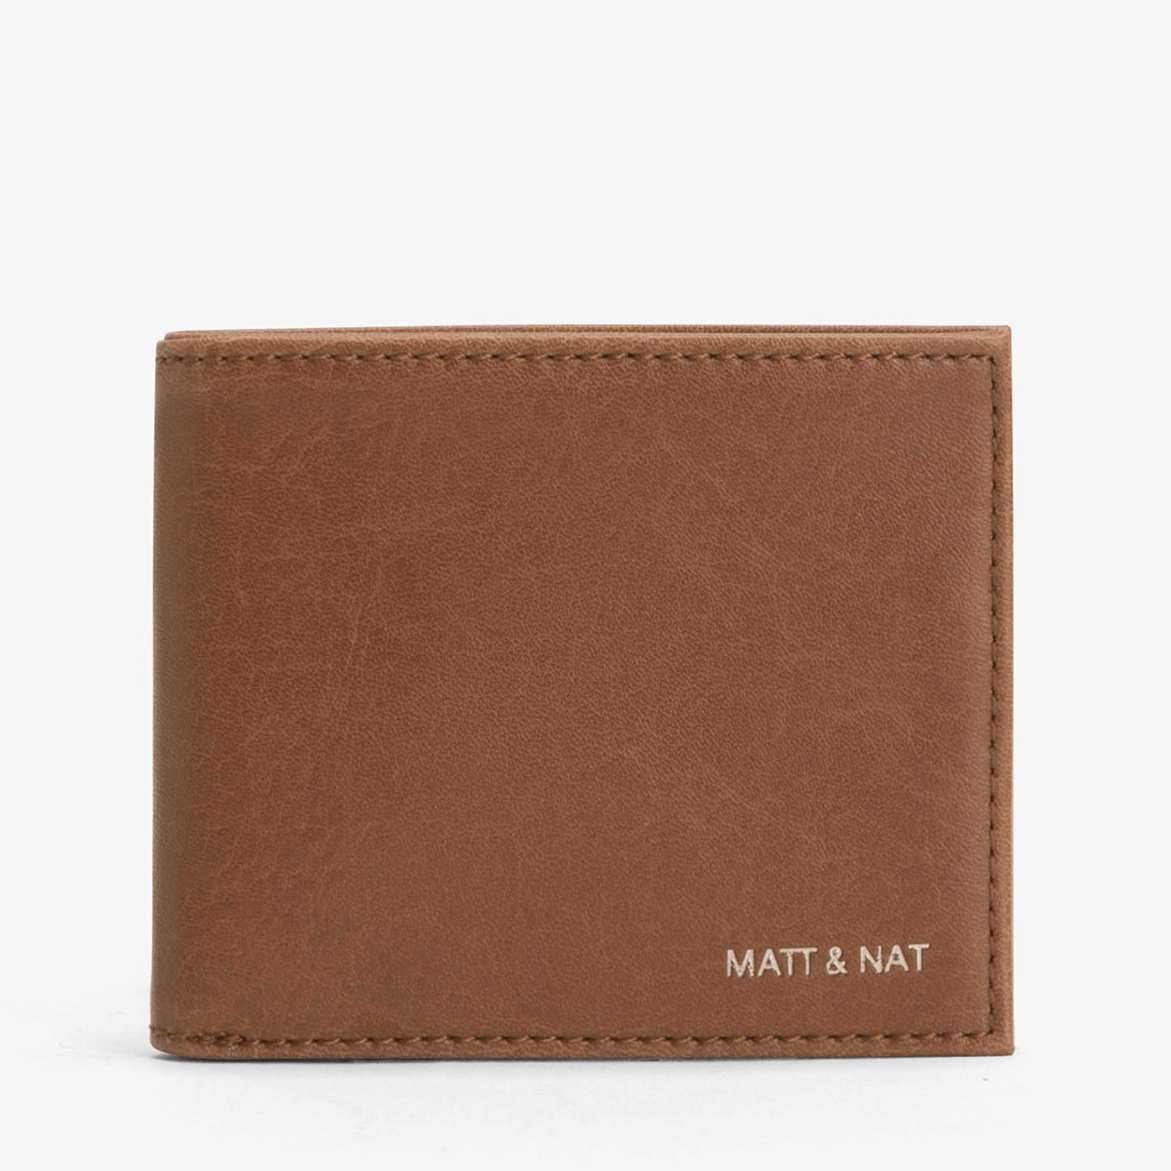 Matt & Nat Rubben Vintage Wallet